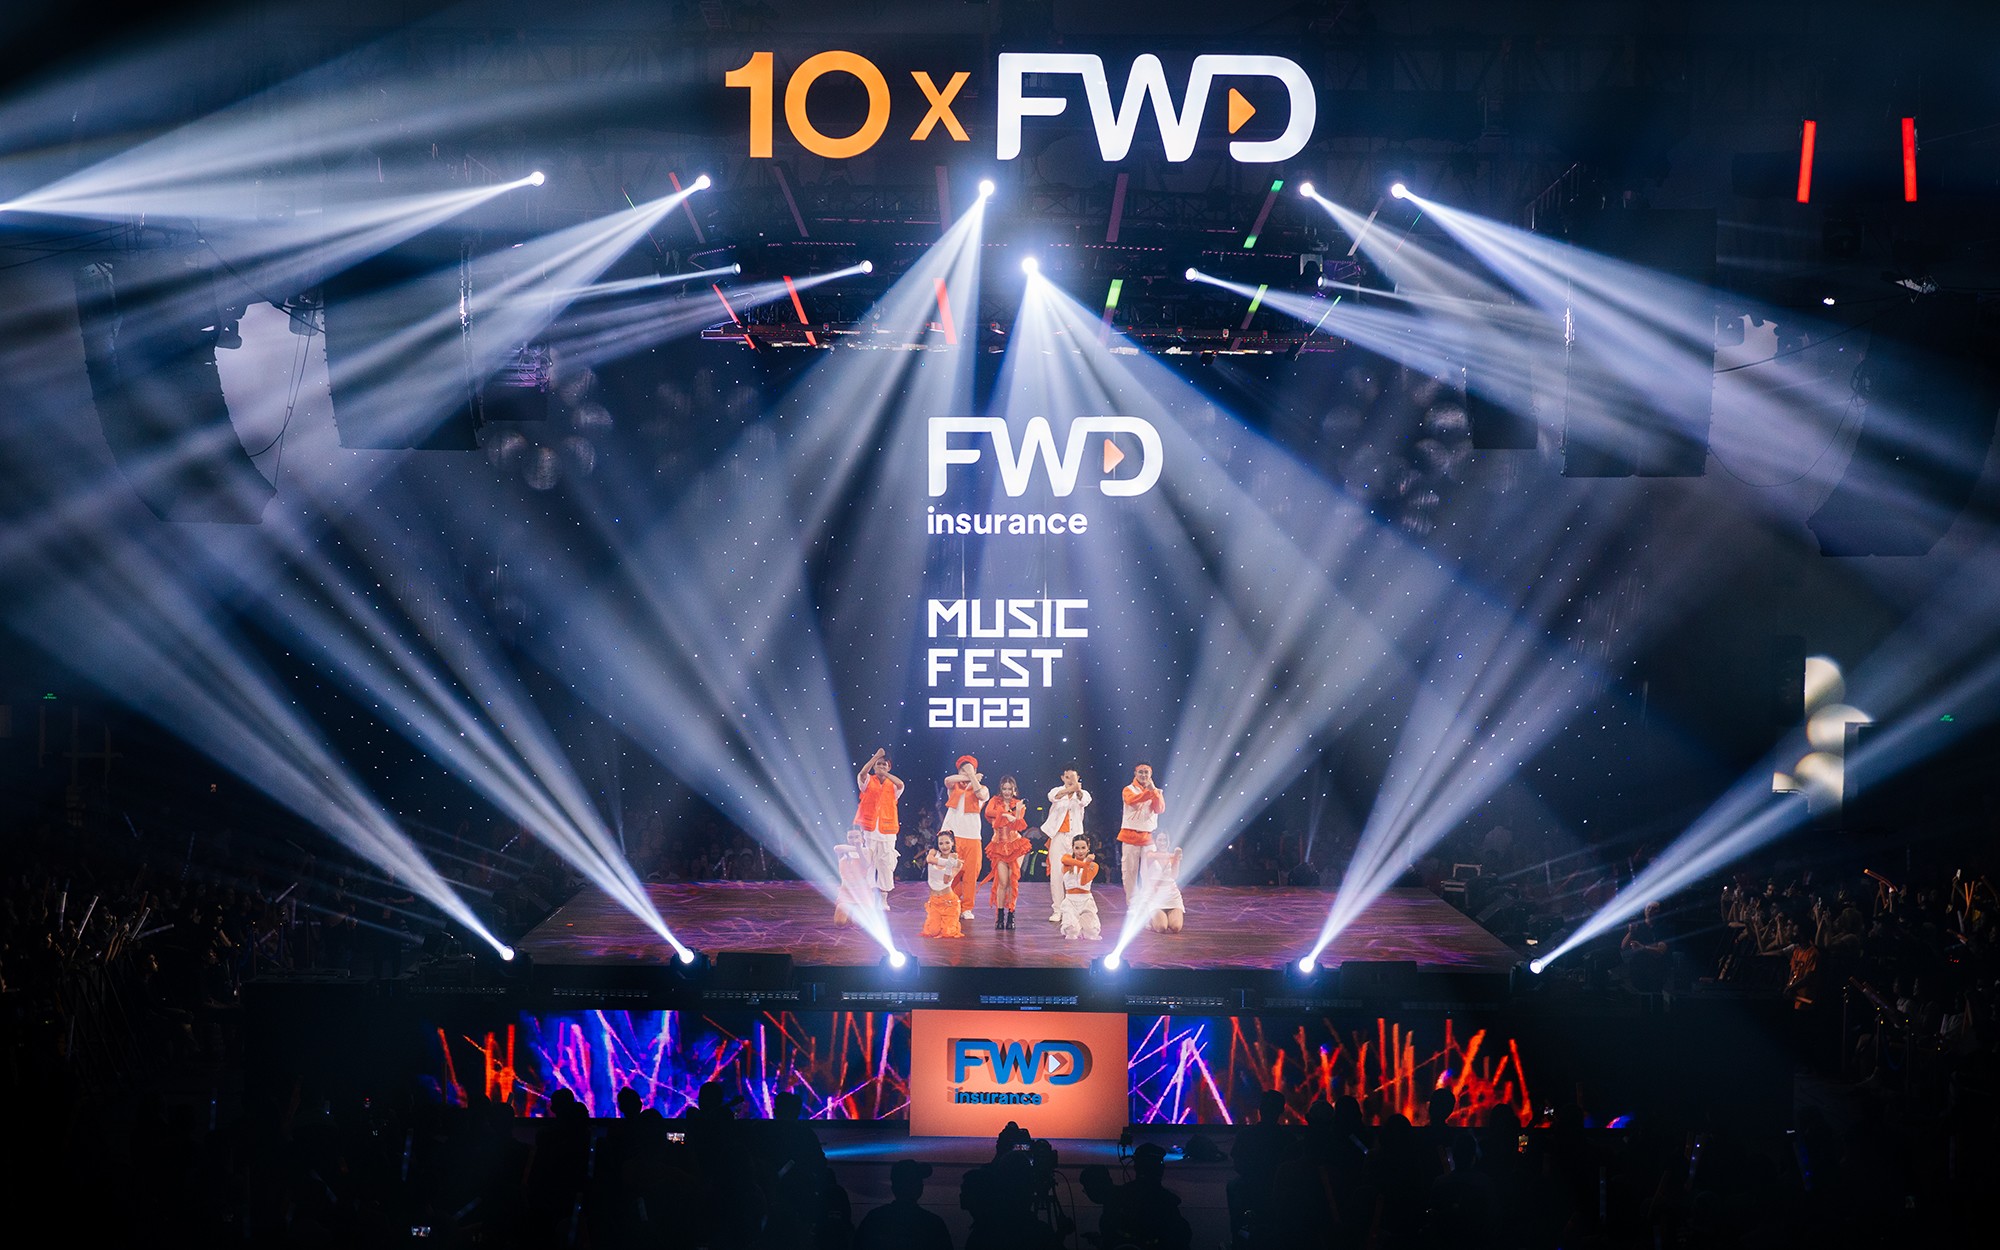 Choáng ngợp với quy mô sân khấu hoành tráng cùng dàn sao hạng A cực "chiến" của FWD Music Fest 2023 - 6